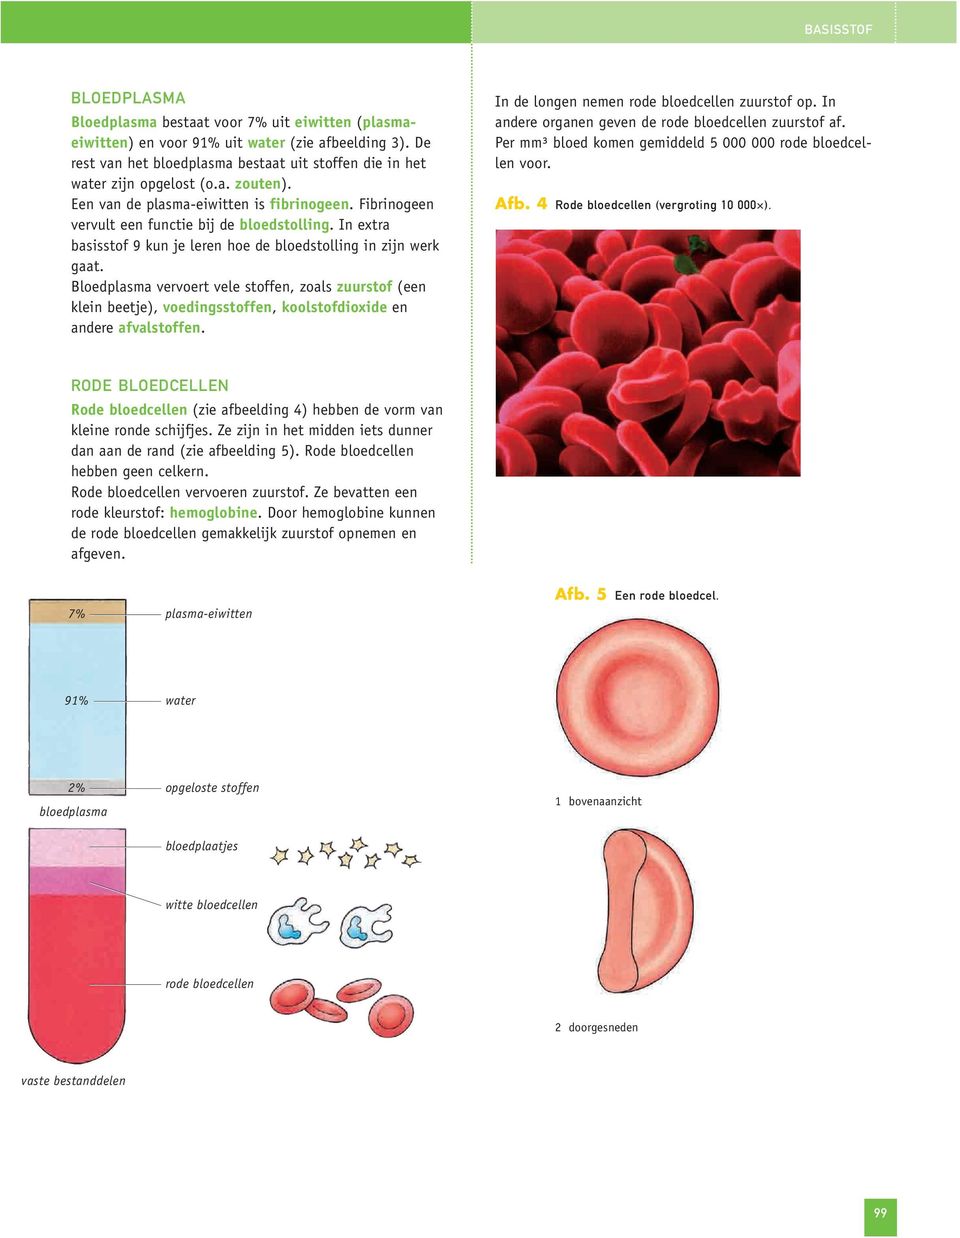 In extra basisstof 9 kun je leren hoe de bloedstolling in zijn werk gaat. Bloedplasma vervoert vele stoffen, zoals zuurstof (een klein beetje), voedingsstoffen, koolstofdioxide en andere afvalstoffen.